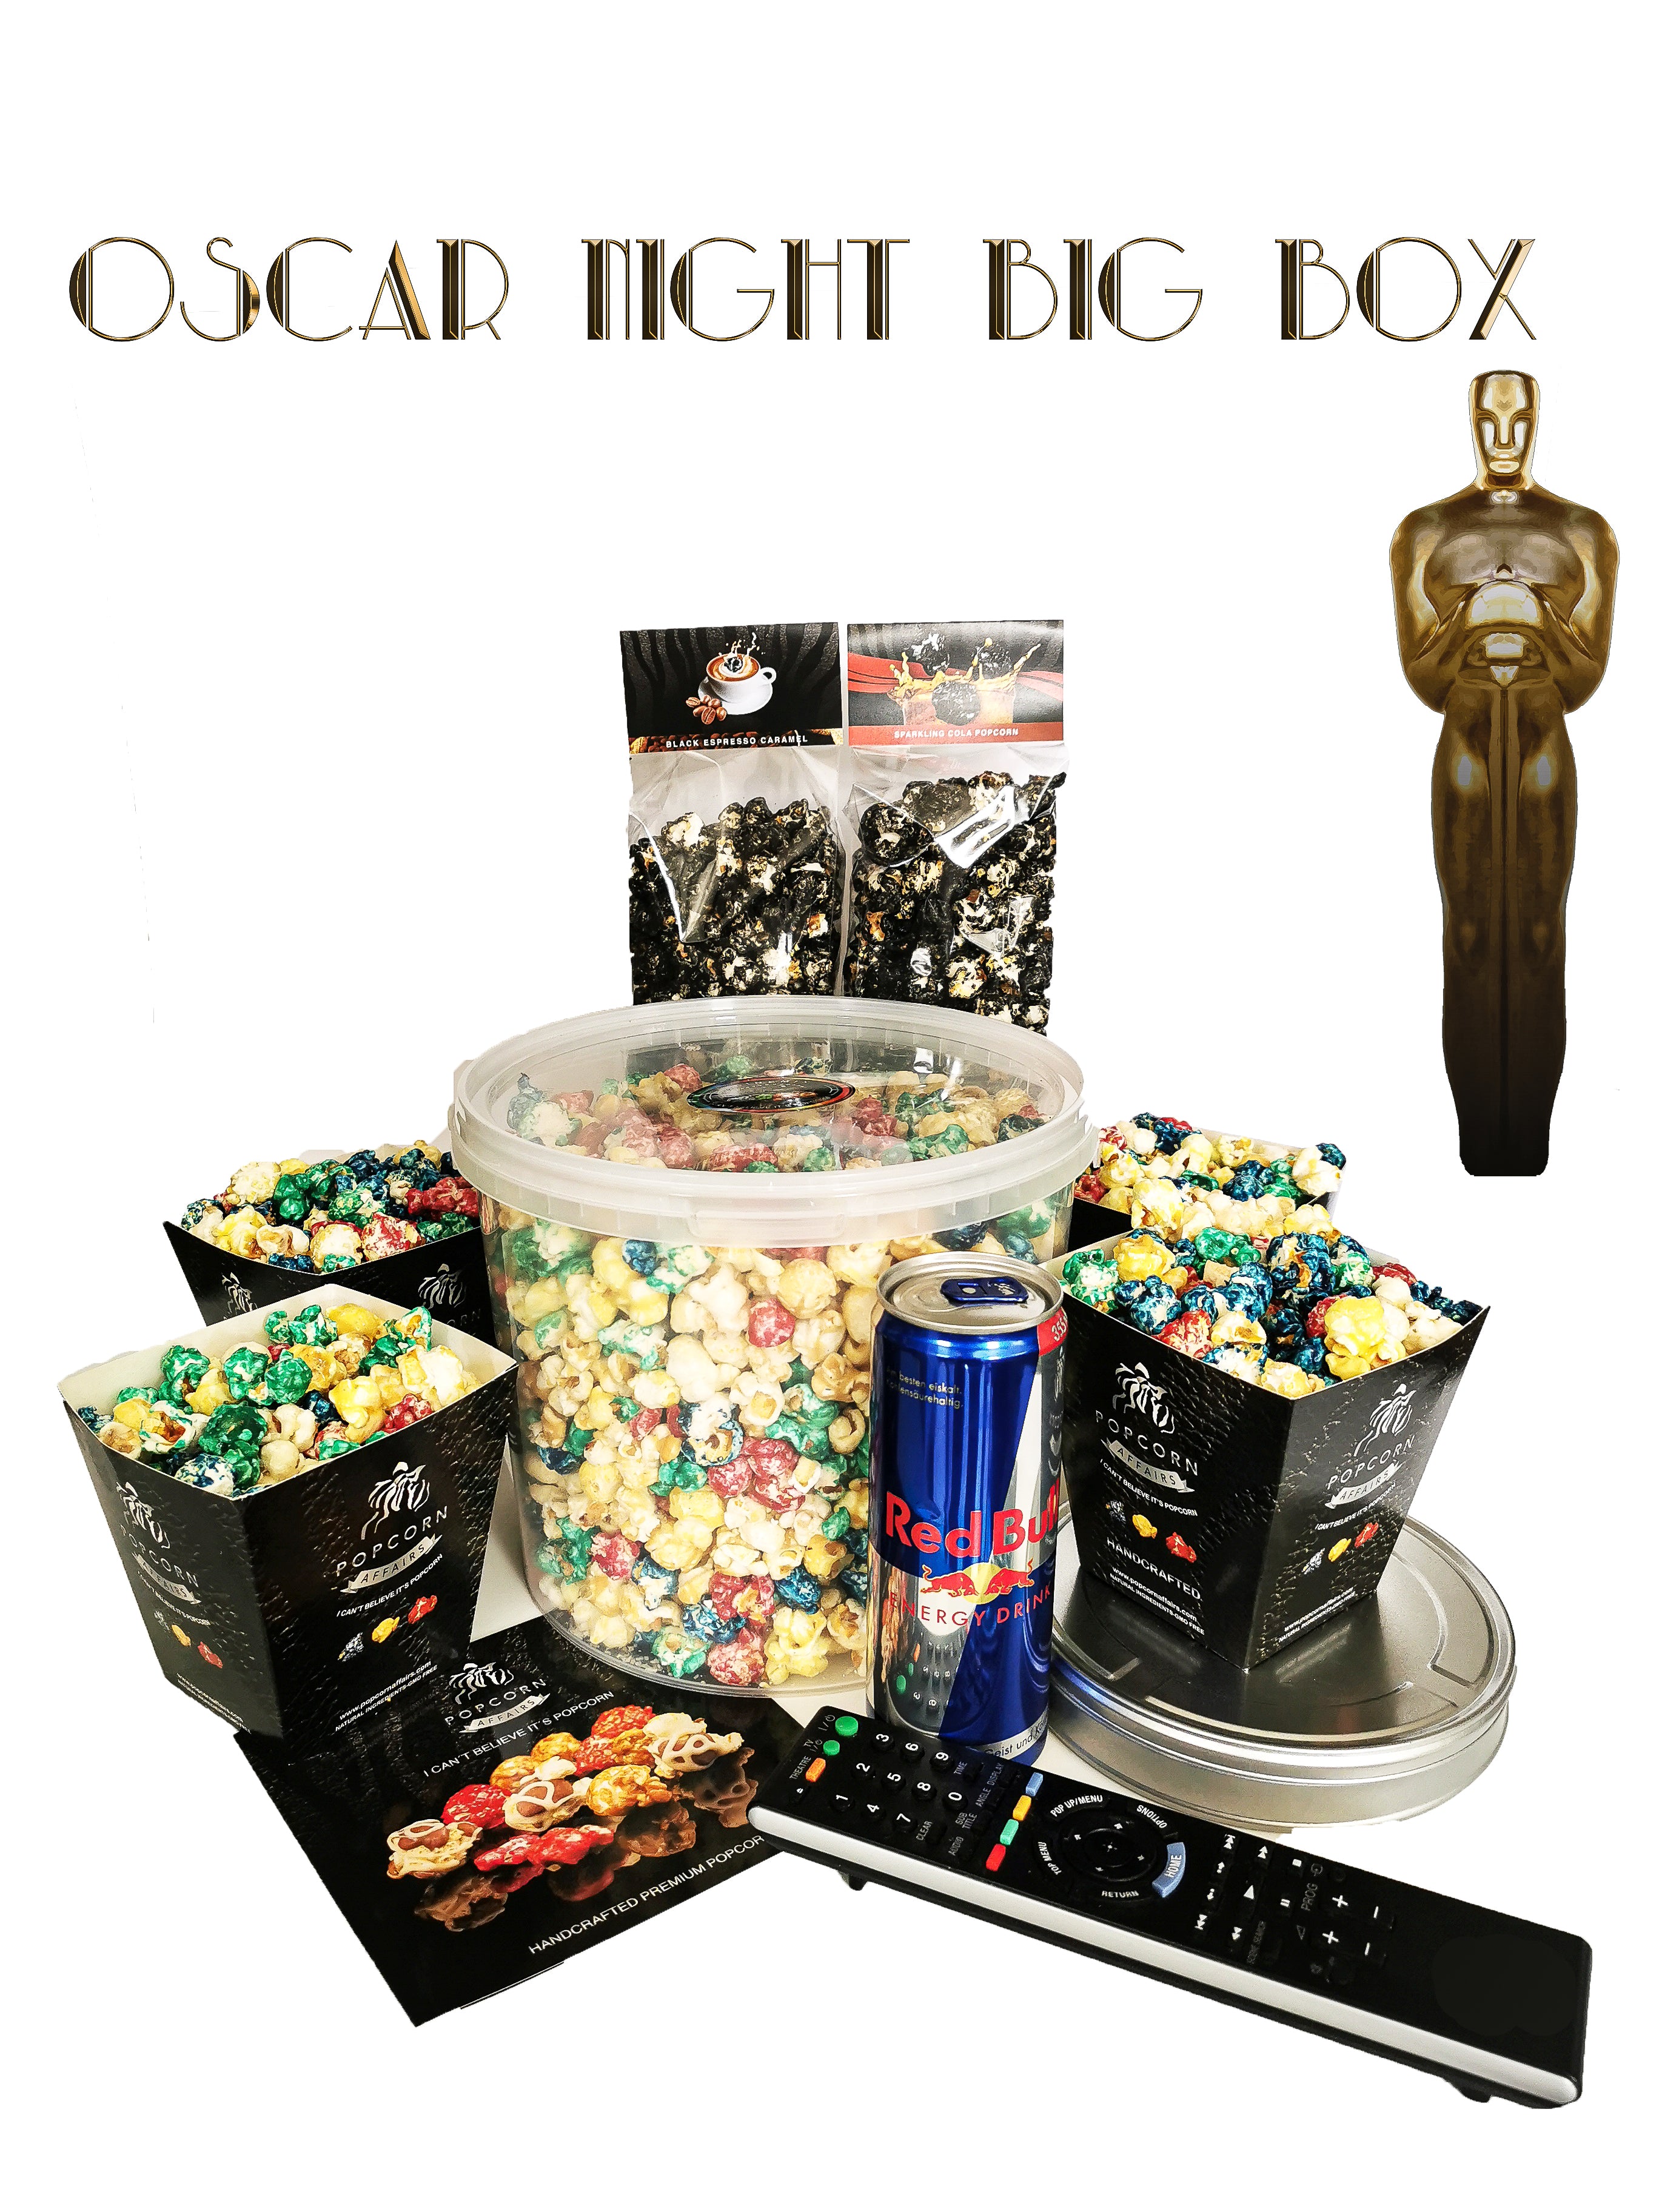 Beliebte Produkte | Popcornaffairs